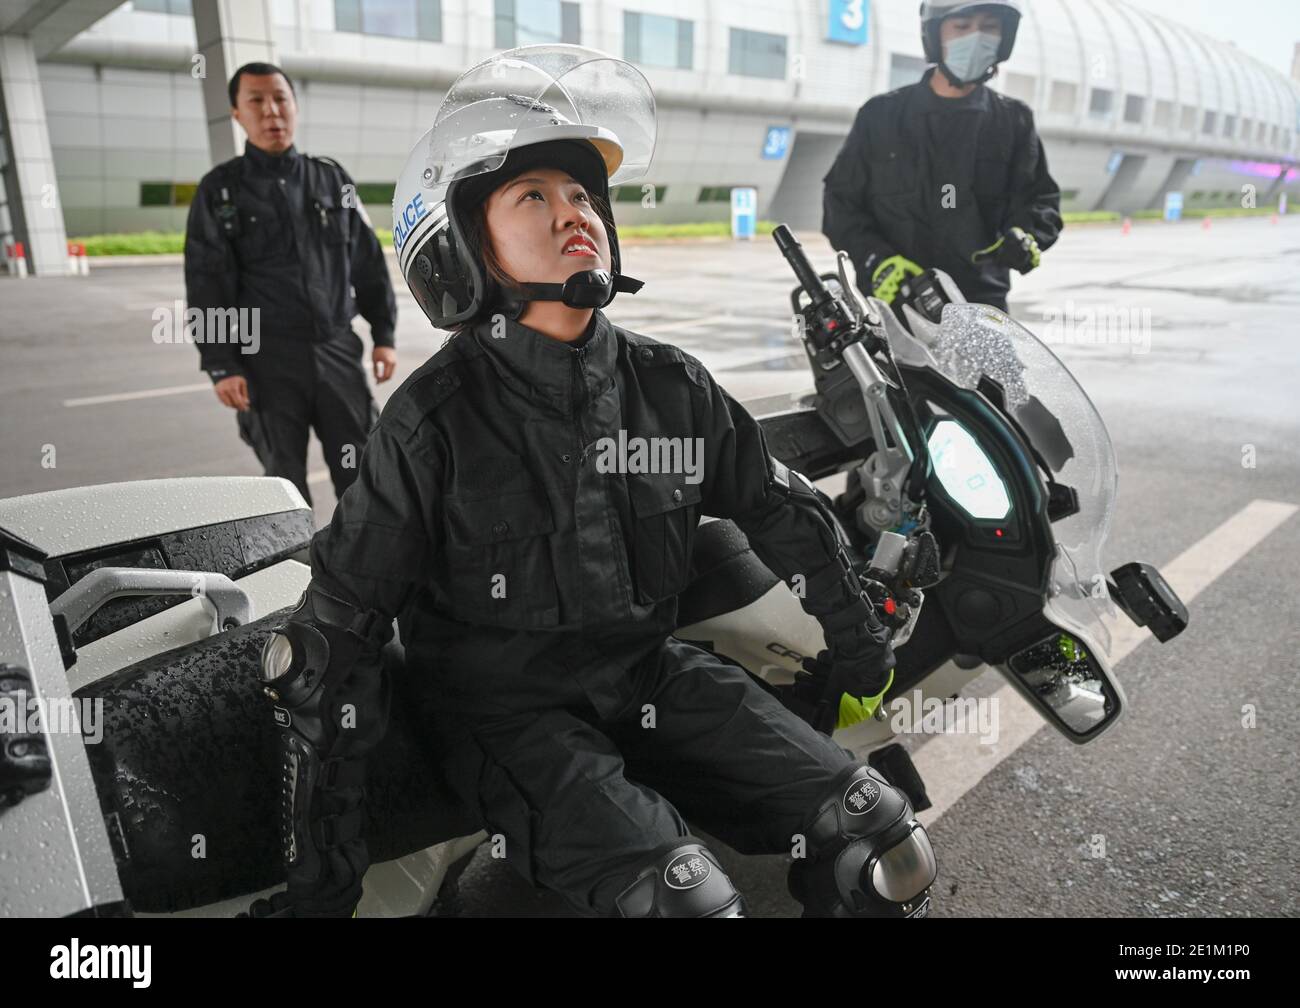 (210108) -- FUZHOU, 8. Januar 2021 (Xinhua) -- Xiang Ting, ein Mitglied eines Motorradteams für Verkehrspolizisten, versucht während eines Fahrtrainings in der Stadt Fuzhou, südöstlich der Provinz Fujian in China, am 15. Dezember 2020, ein gefallenes Motorrad anzuheben. Das erste Verkehrspolizisten-Motorradteam der Stadt wurde Tage vor dem bevorstehenden ersten chinesischen Polizeitag, der am 10. Januar 2021 angesetzt wird, gegründet. Mit einer durchschnittlichen Höhe von bis zu 1.7 Metern sind diese Motorradfahrerinnen in schönen Uniformen gut ausgebildet, um das etwa 300 kg schwere Polizeimotorrad fahren zu können, um Dienst zu leisten, ohne dabei die Aufmerksamkeit zu erregen Stockfoto